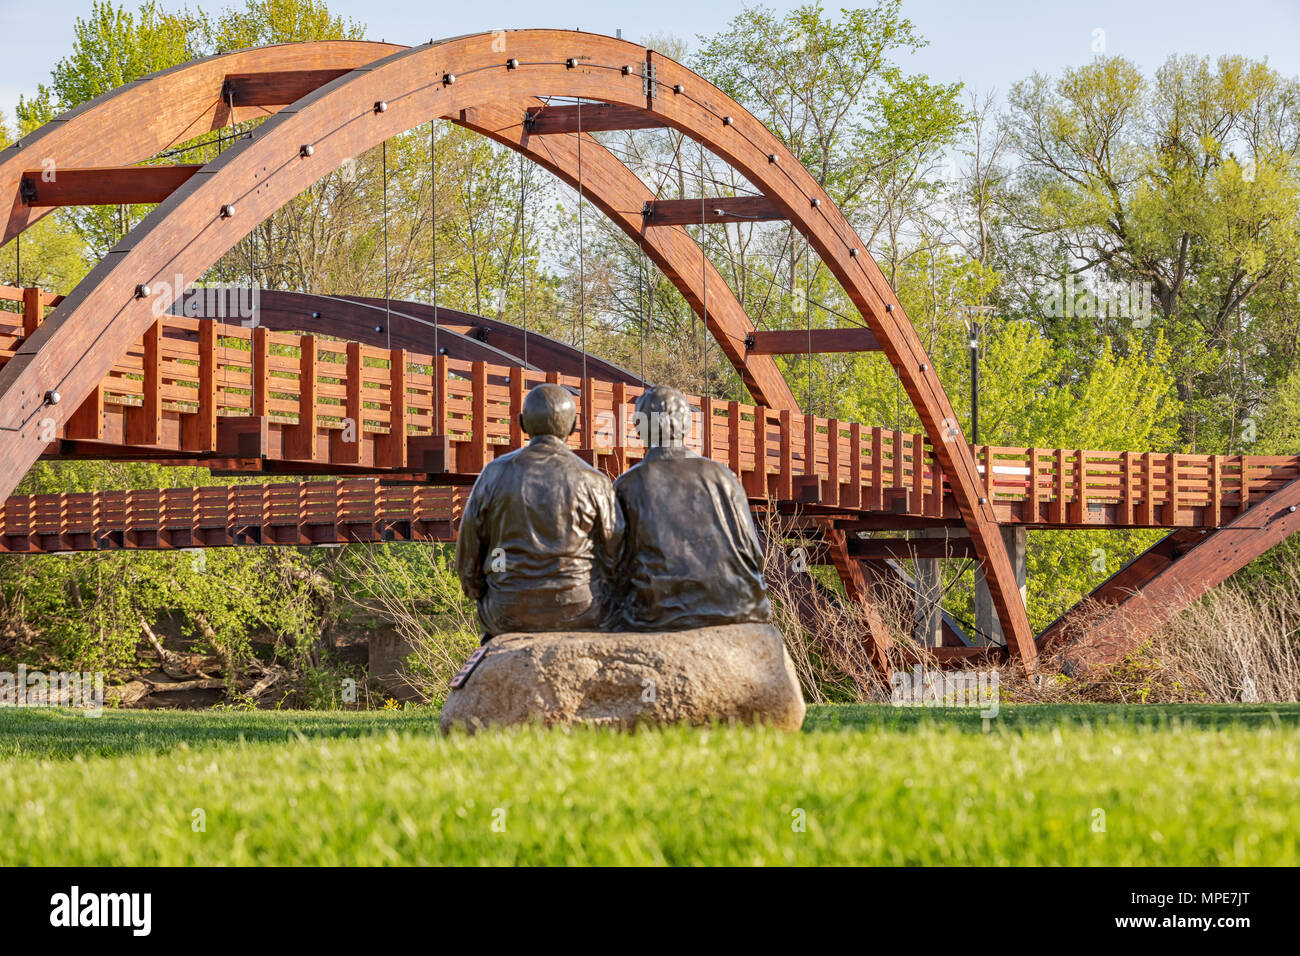 Le tridge couvre la confluence des rivières Chippewa et Tittabawassee dans le parc Chippewassee à Midland, Michigan. Couple Sculpture en premier plan Banque D'Images